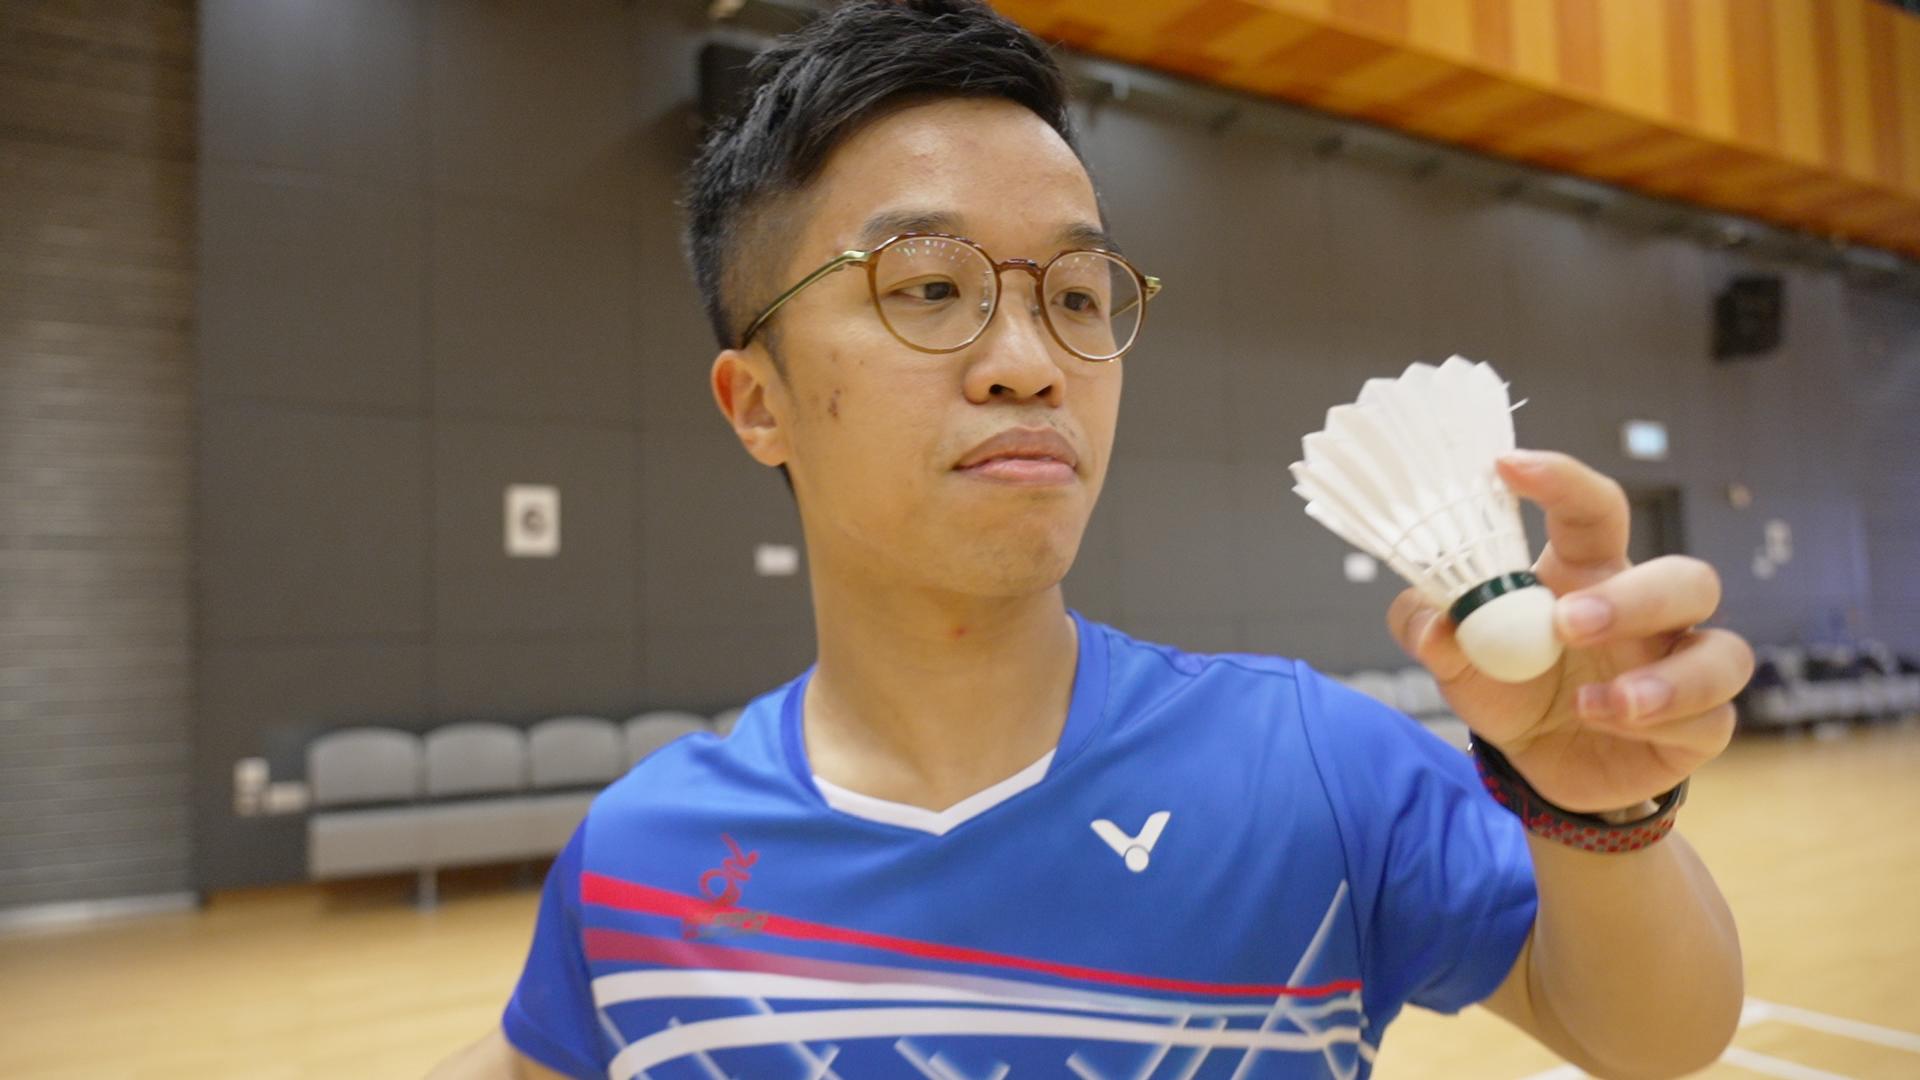 王鎮炎（Tim）是殘疾人羽毛球SH6級（短肢組）運動員，代表香港出戰過多項世界性賽事，奪獎無數。